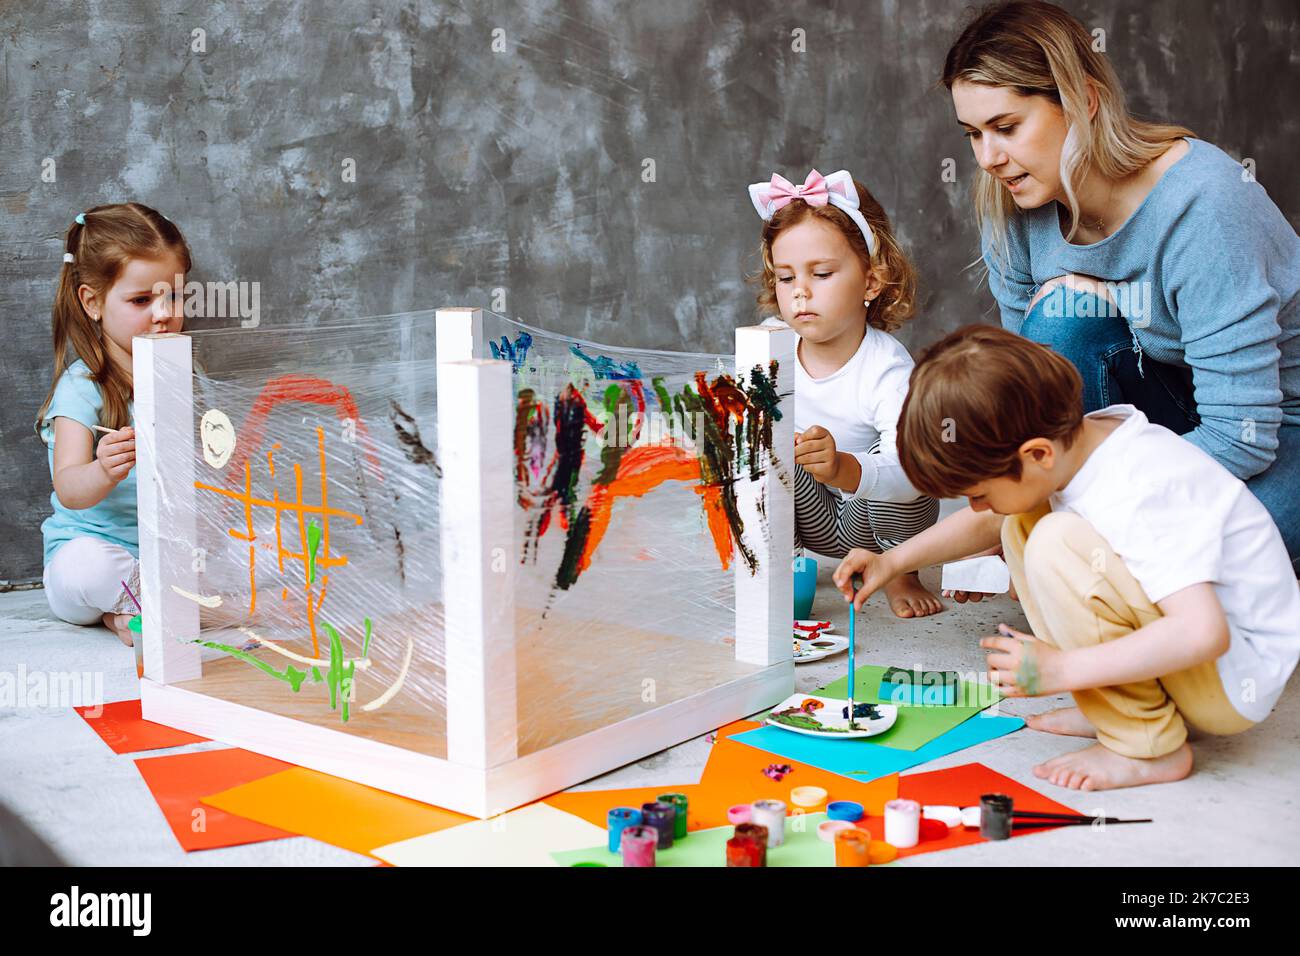 Erzieher, der Unterricht mit Kindern im Zeichnen im Kindergarten durchführt. Kinder sitzen im Spielzimmer und malen mit einem Pinsel auf einem Klebestreifen Stockfoto